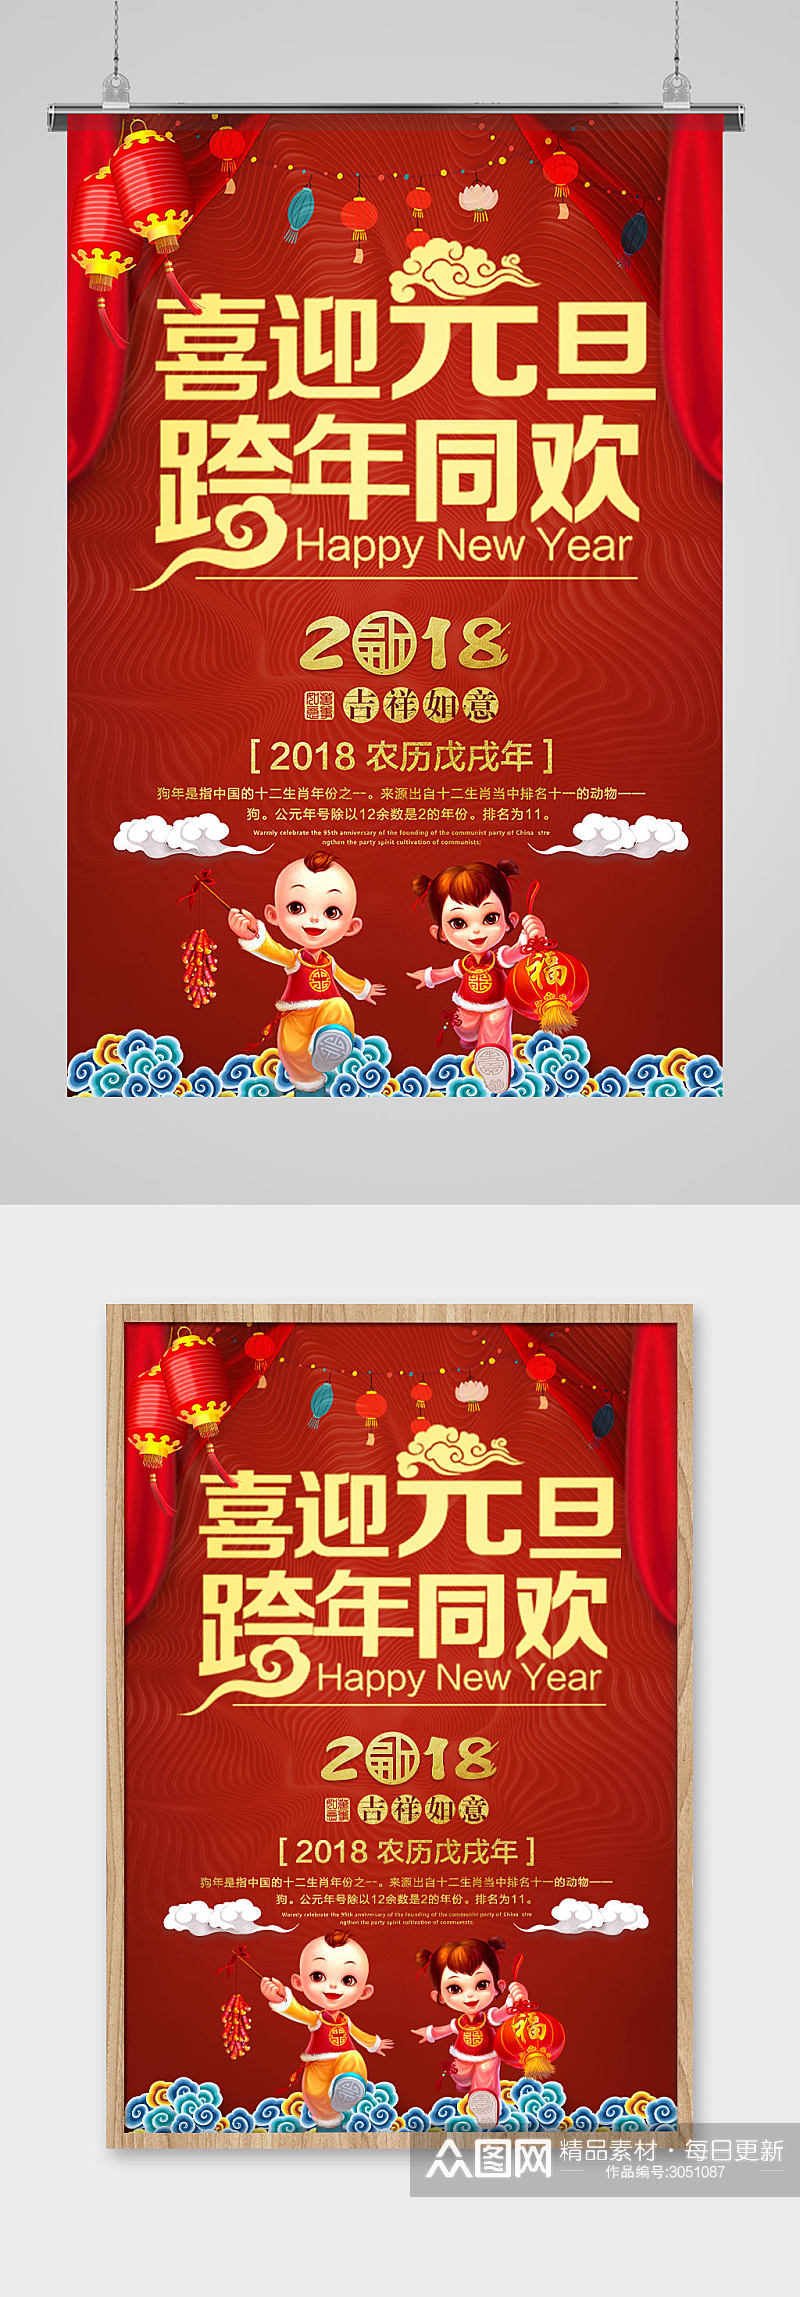 红色大气喜迎元旦跨年同欢中国风元旦海报素材